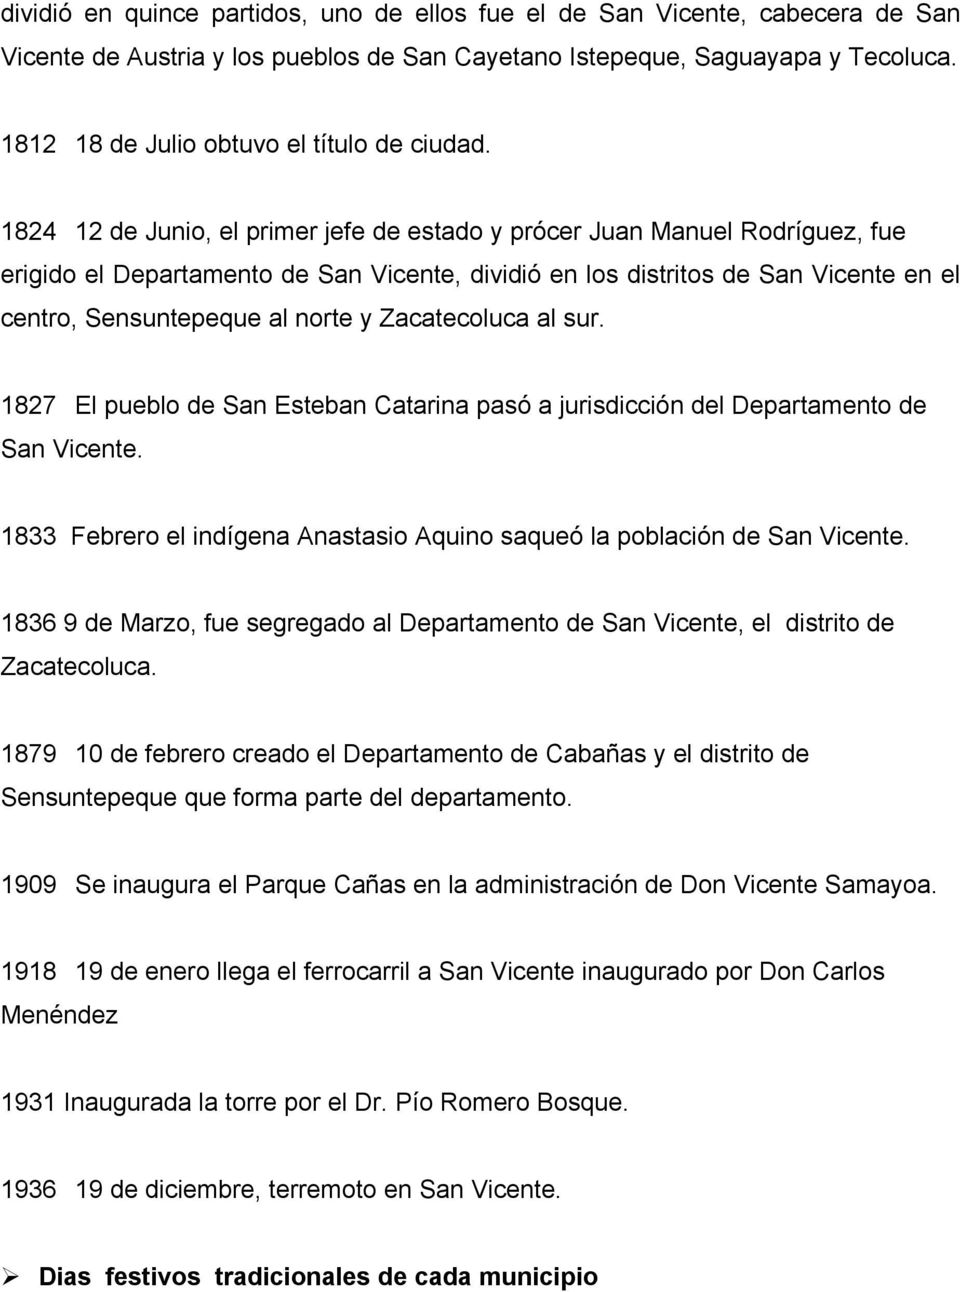 1824 12 de Junio, el primer jefe de estado y prócer Juan Manuel Rodríguez, fue erigido el Departamento de San Vicente, dividió en los distritos de San Vicente en el centro, Sensuntepeque al norte y